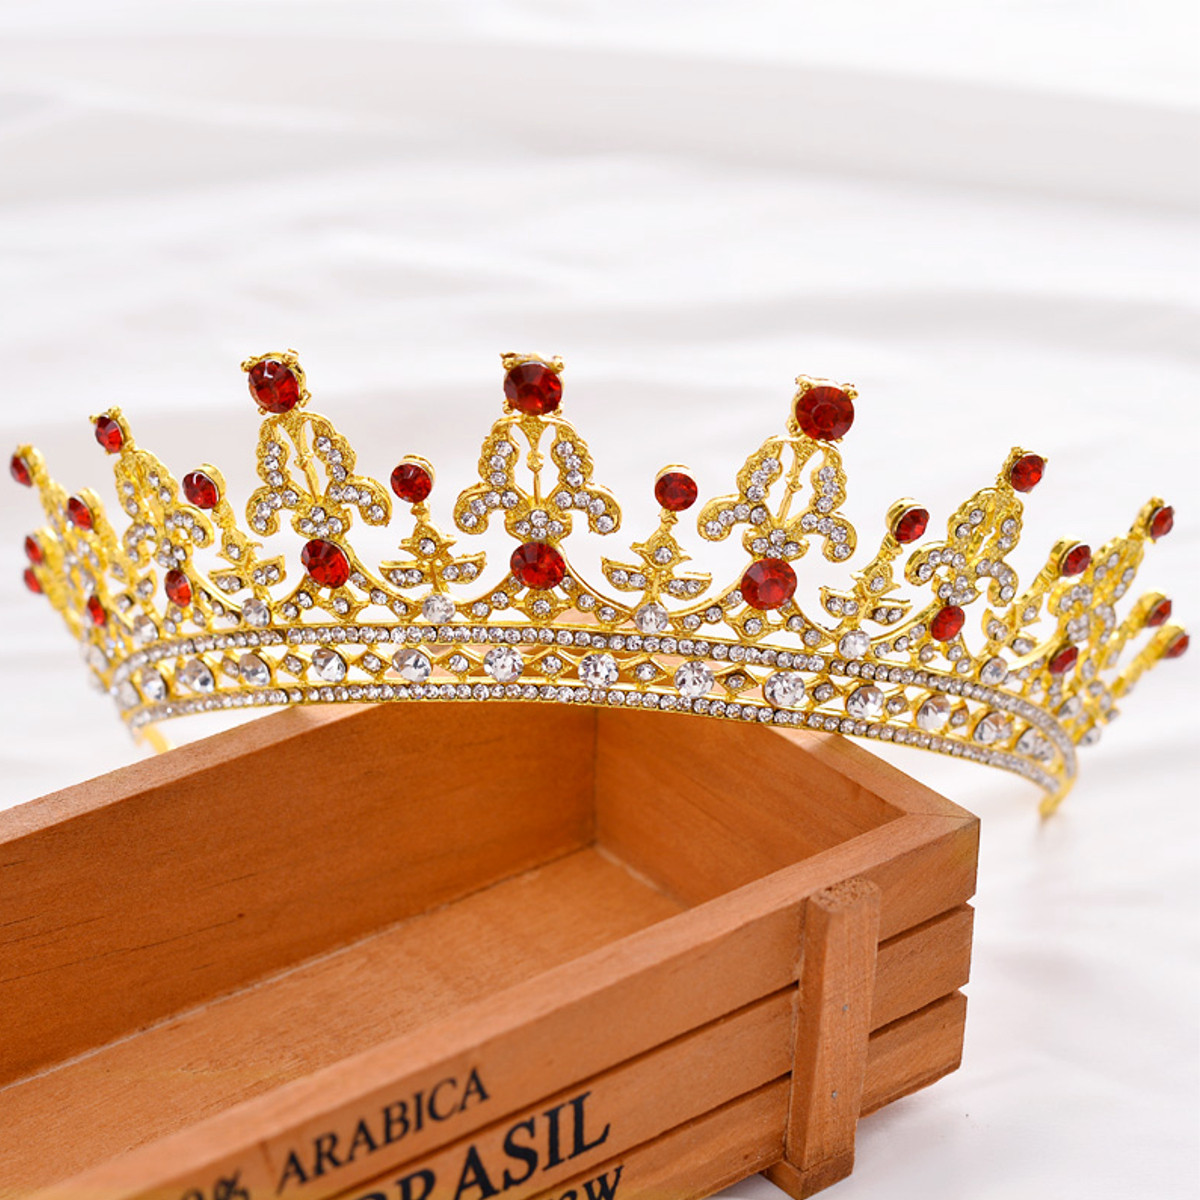 

Bride Gold Red Rhinestone Crystal Tiara Crown Princess Queen Wedding Bridal Party Headpiece